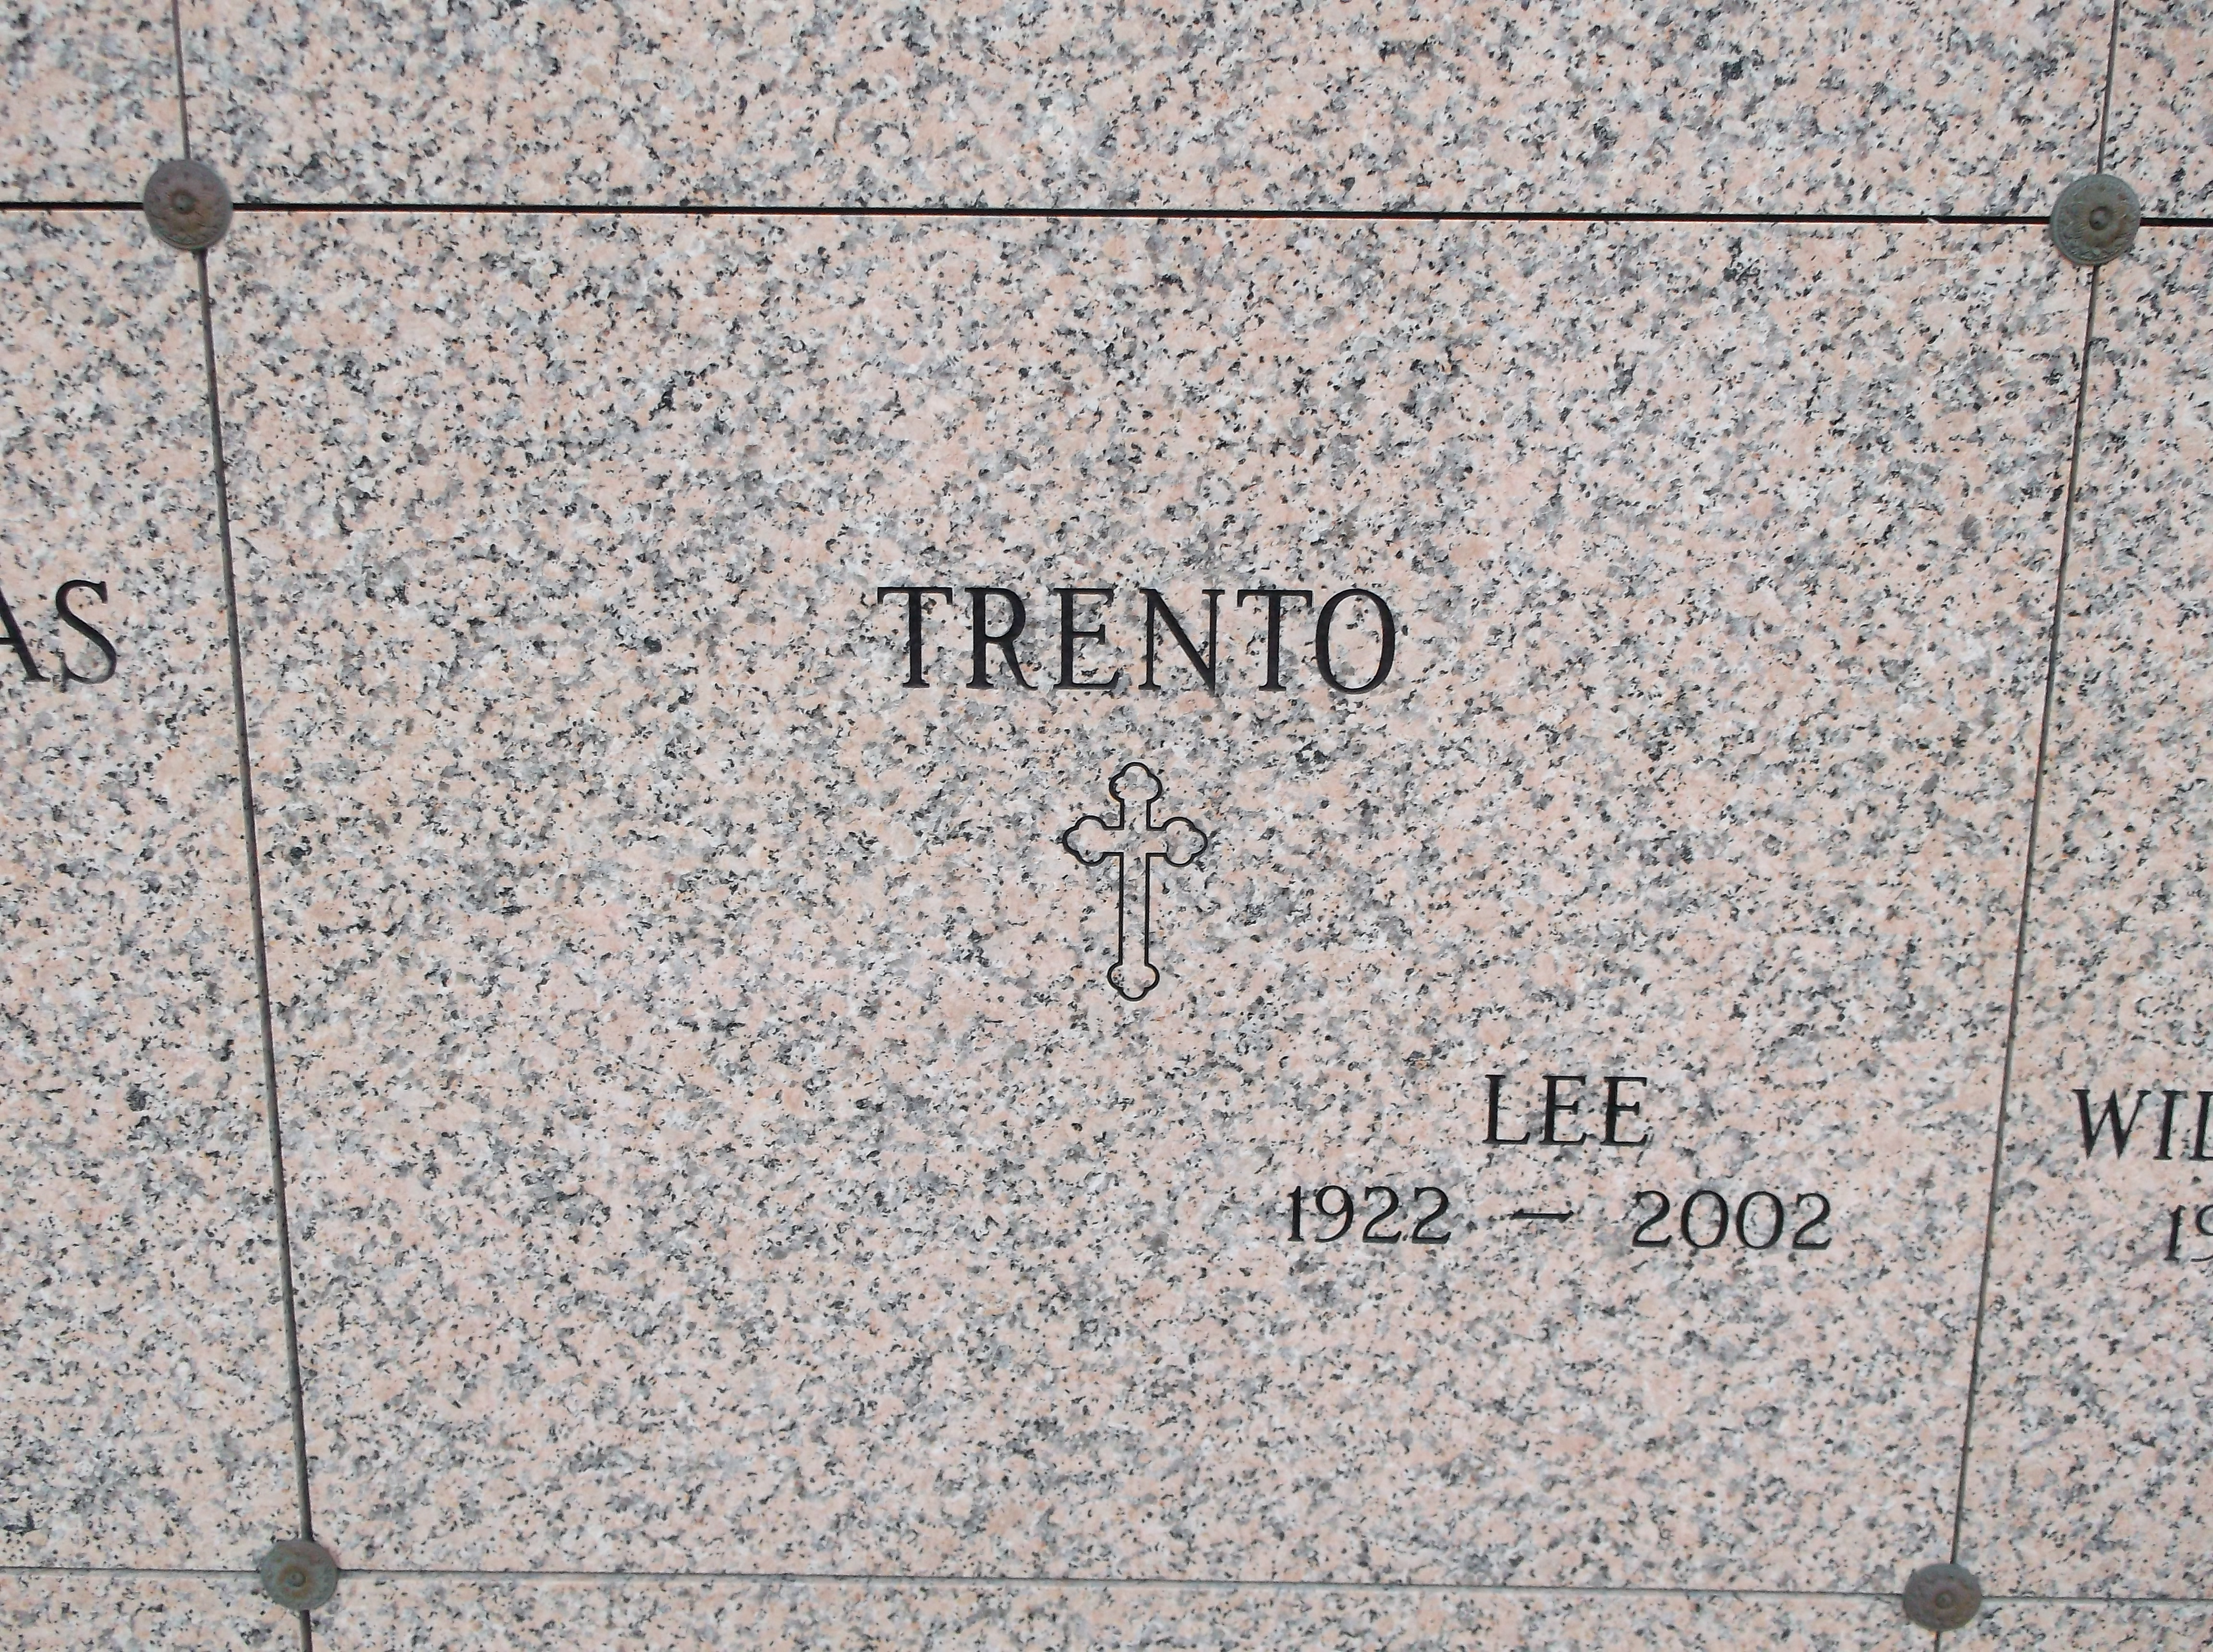 Lee Trento